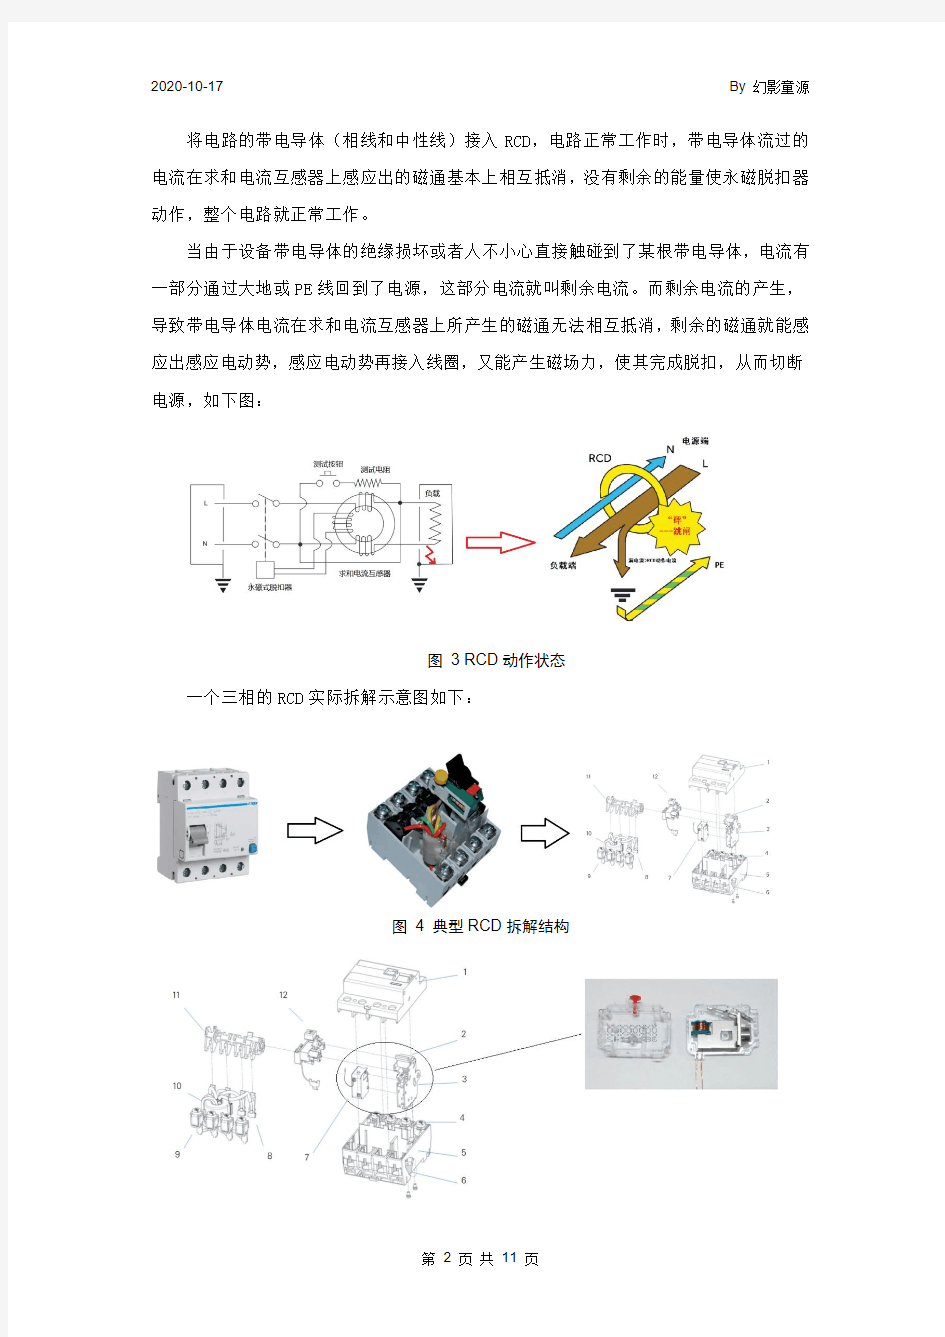 漏电保护(RCD) 的原理、 应用及选型-1